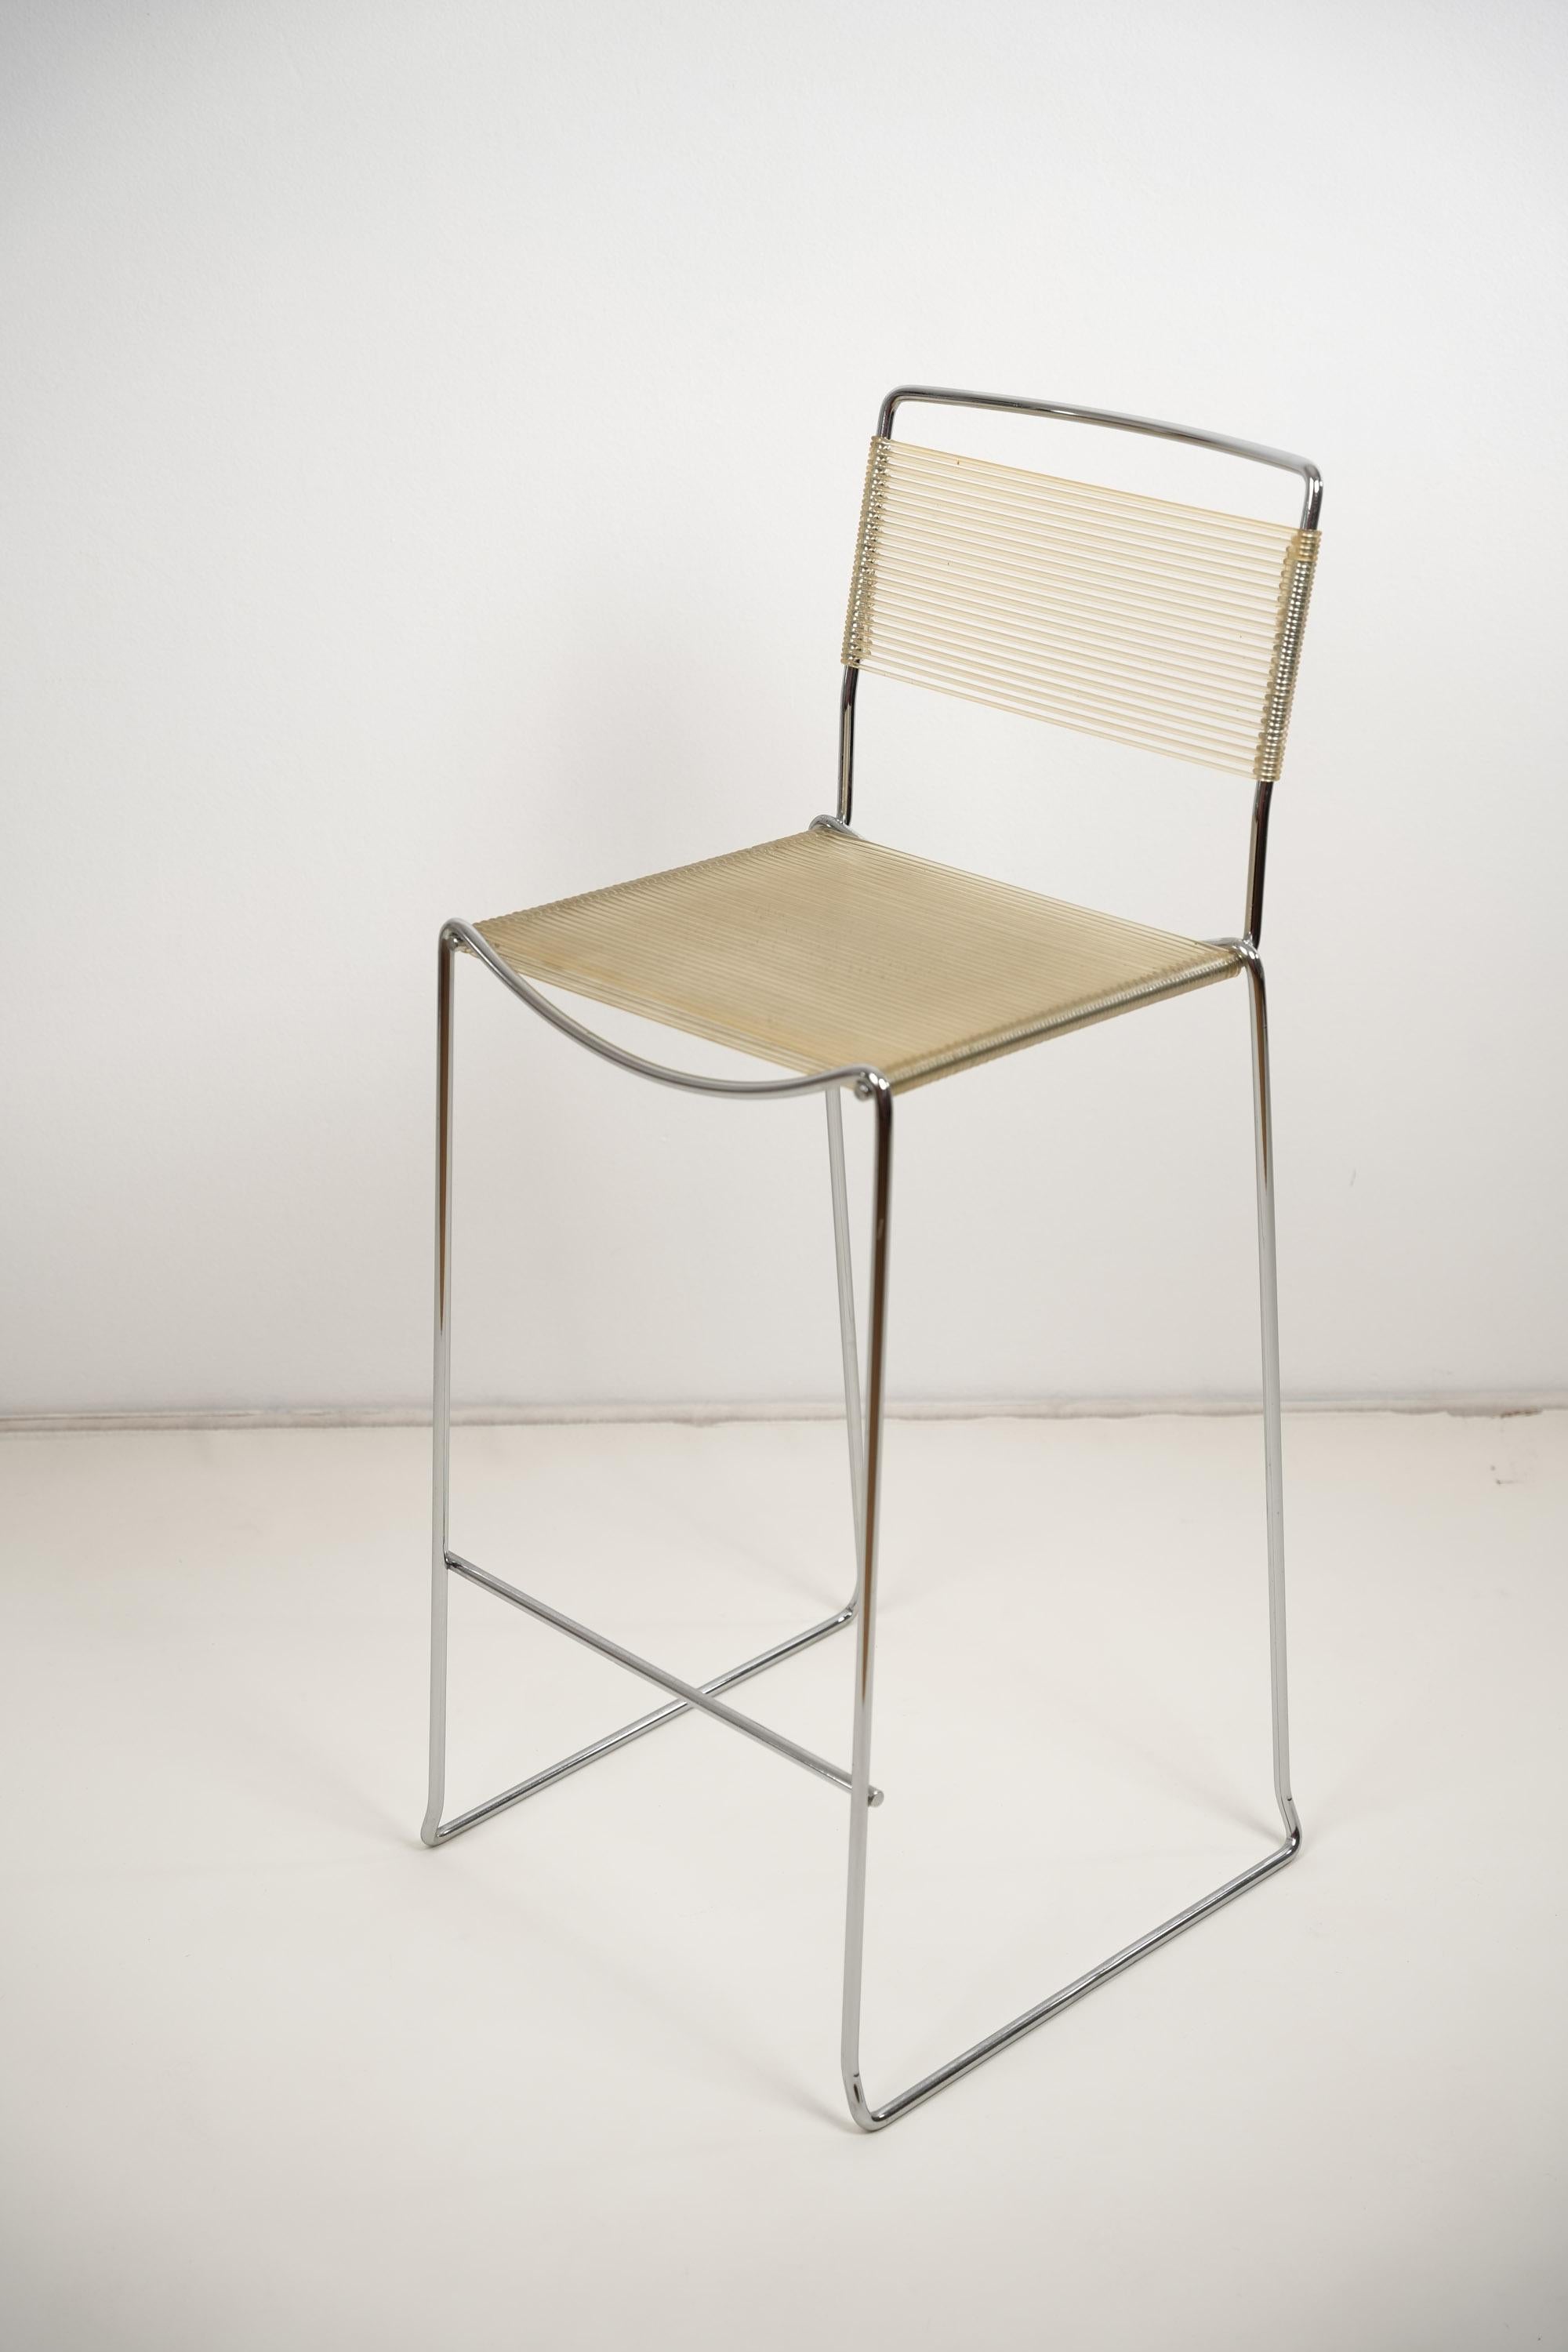 A great Spaghetti stool by Giandomenico Belotti made in italy 1970s for Alias.